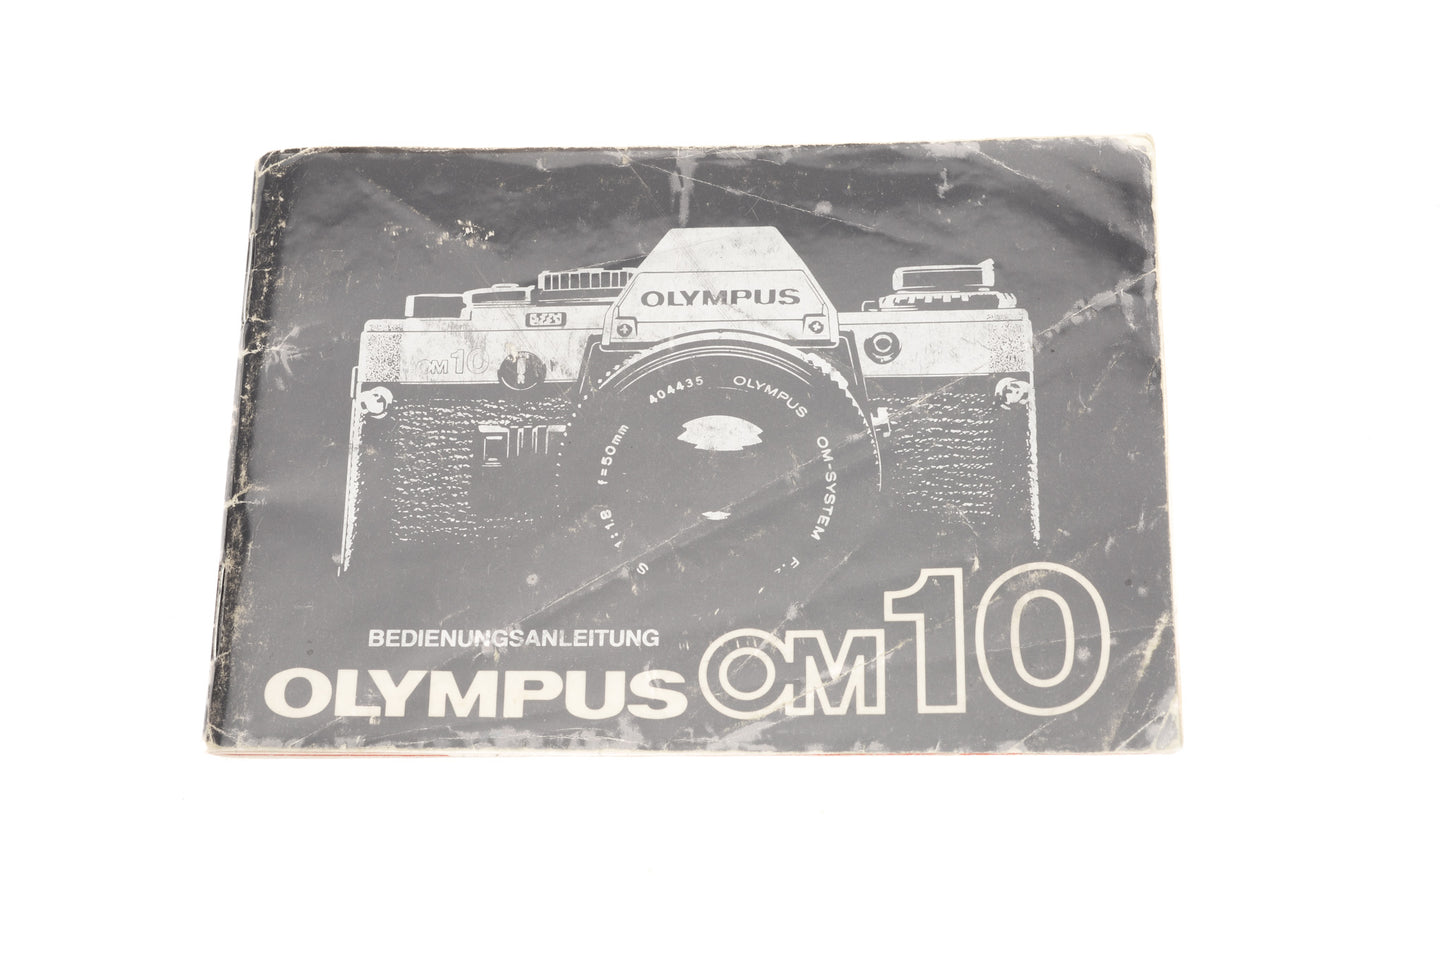 Olympus OM10 Bedienungsanleitung - Accessory